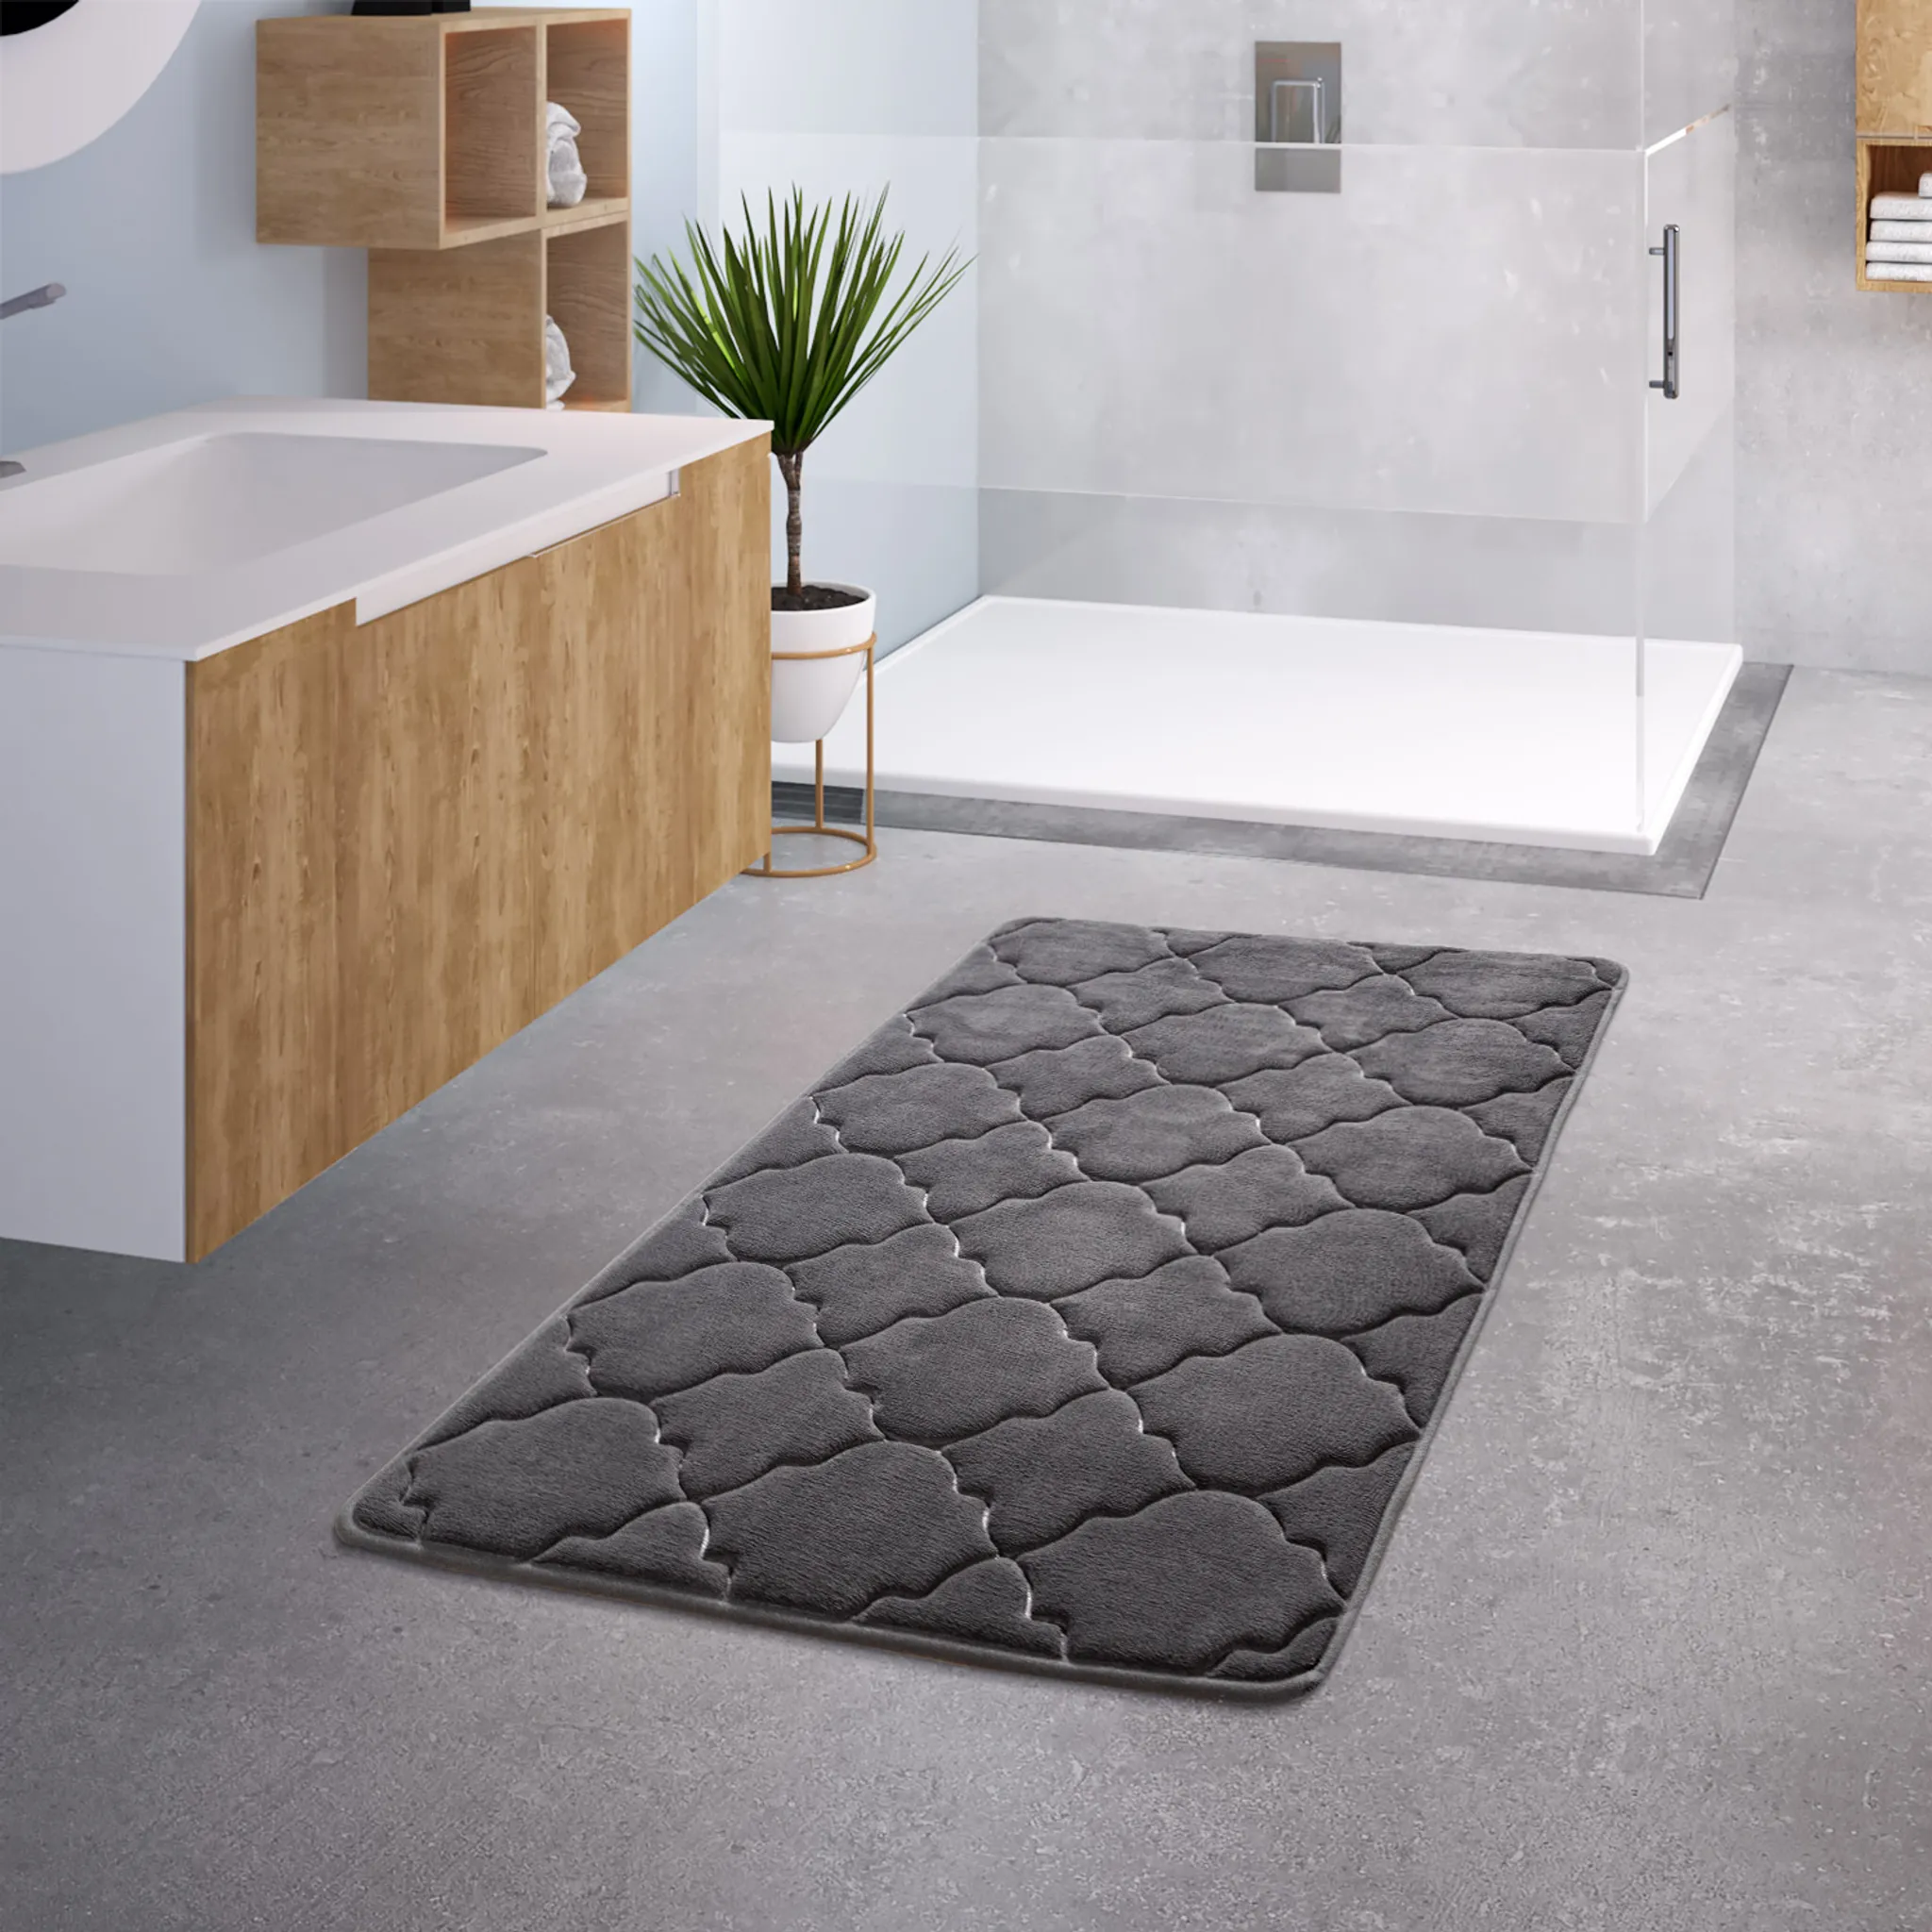 Kaufe Badezimmer absorbierende rutschfeste Matte Eingangstürmatte Duschbad  Badewanne Teppich Badezimmerboden Küchenteppich